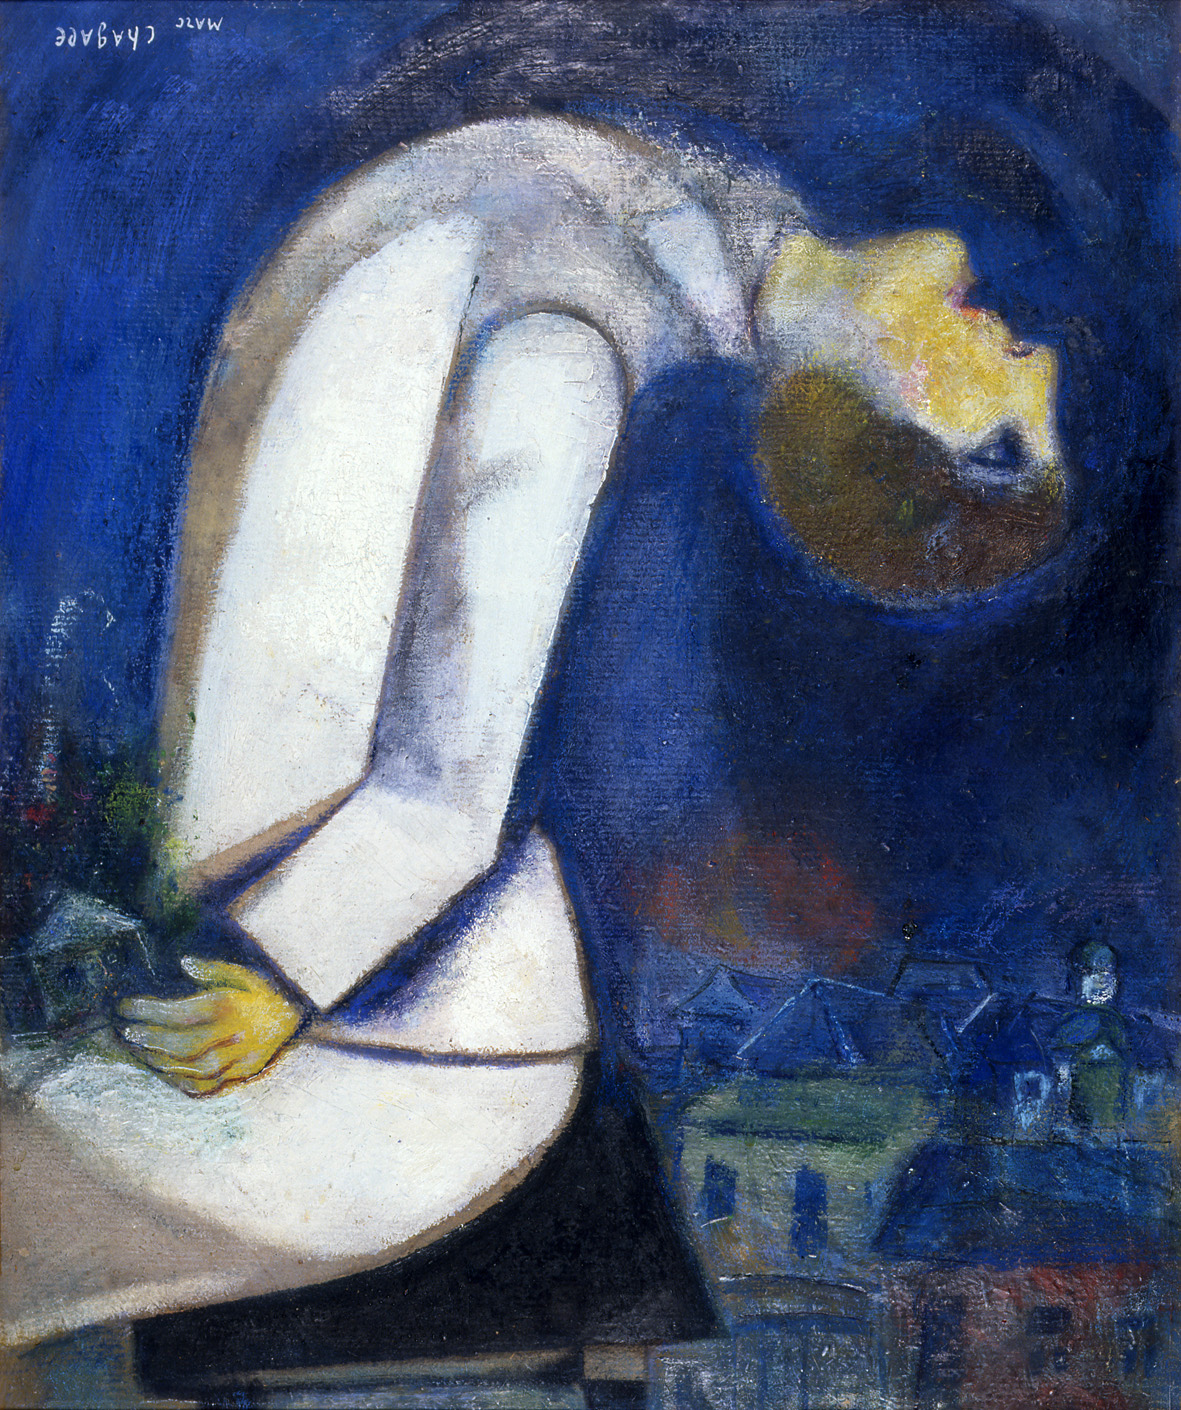 Marc Chagall, L'uomo con la testa rovesciata, 1919